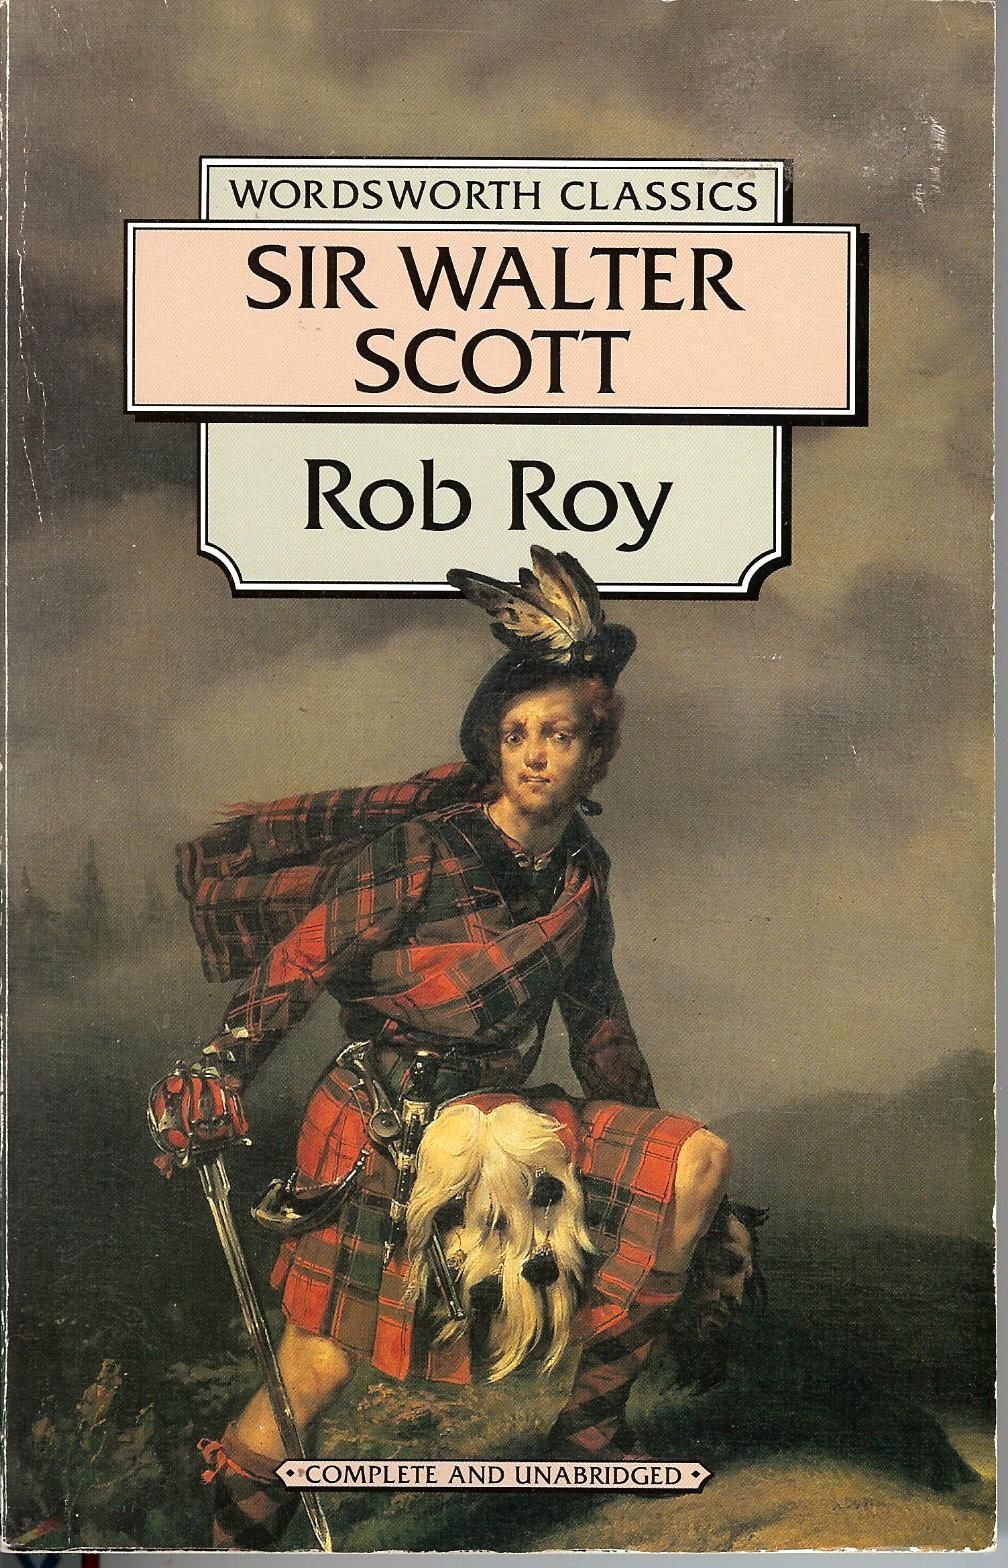 Rob Roy by Sir Walter Scott te koop op hetbookcafe.nl